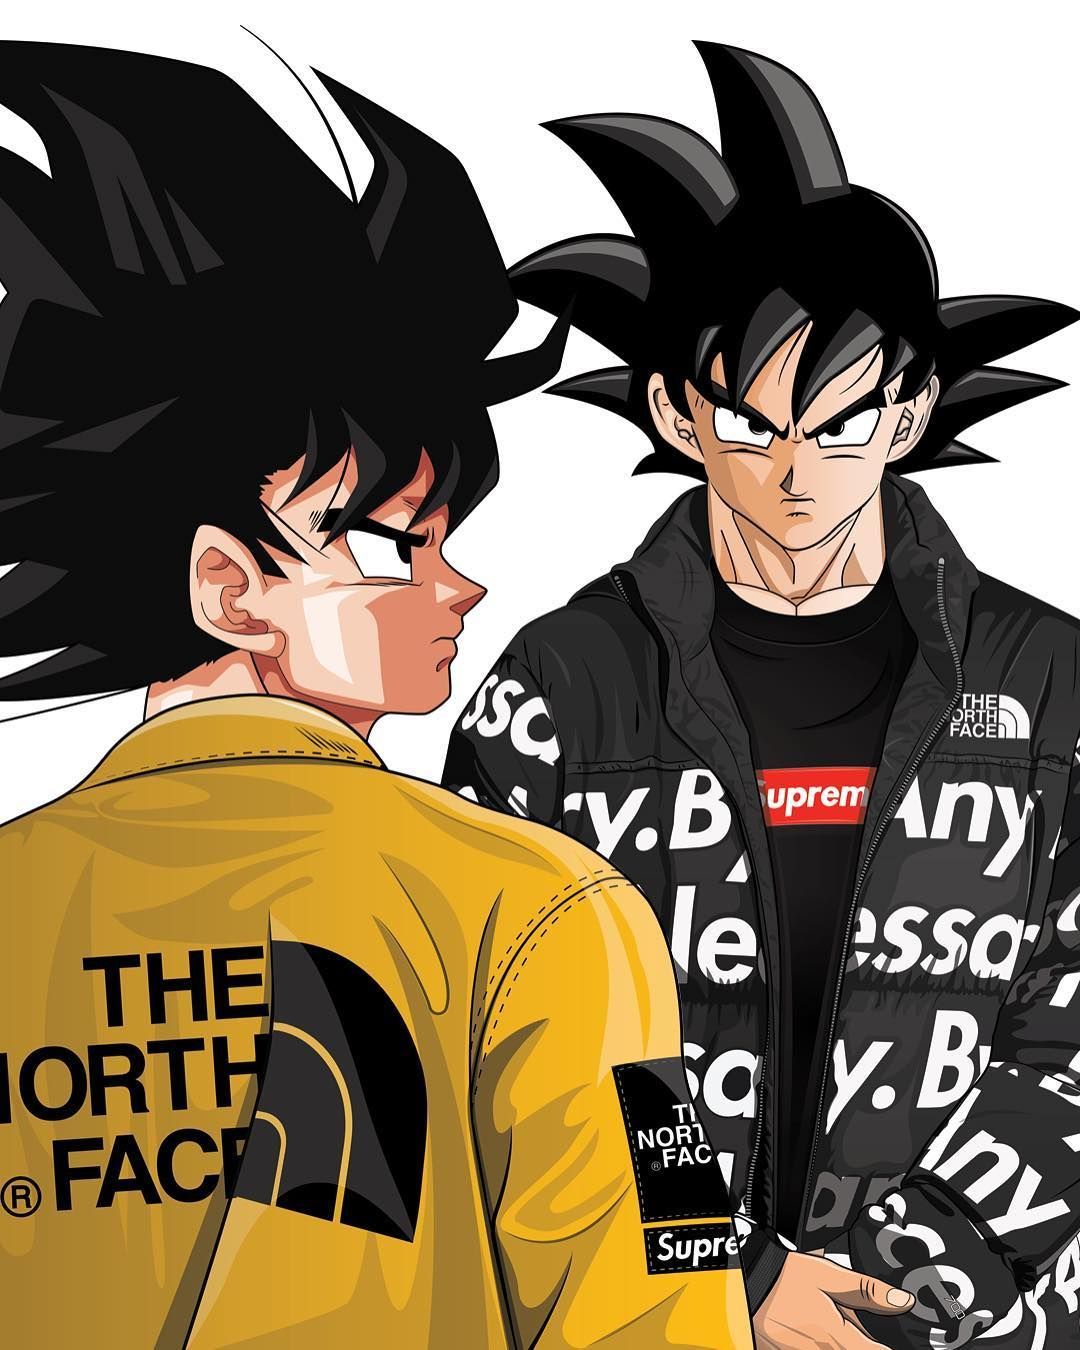 bape instagram anime edits - Google Search  Goku e vegeta, Animação  suspensa, Goku desenho